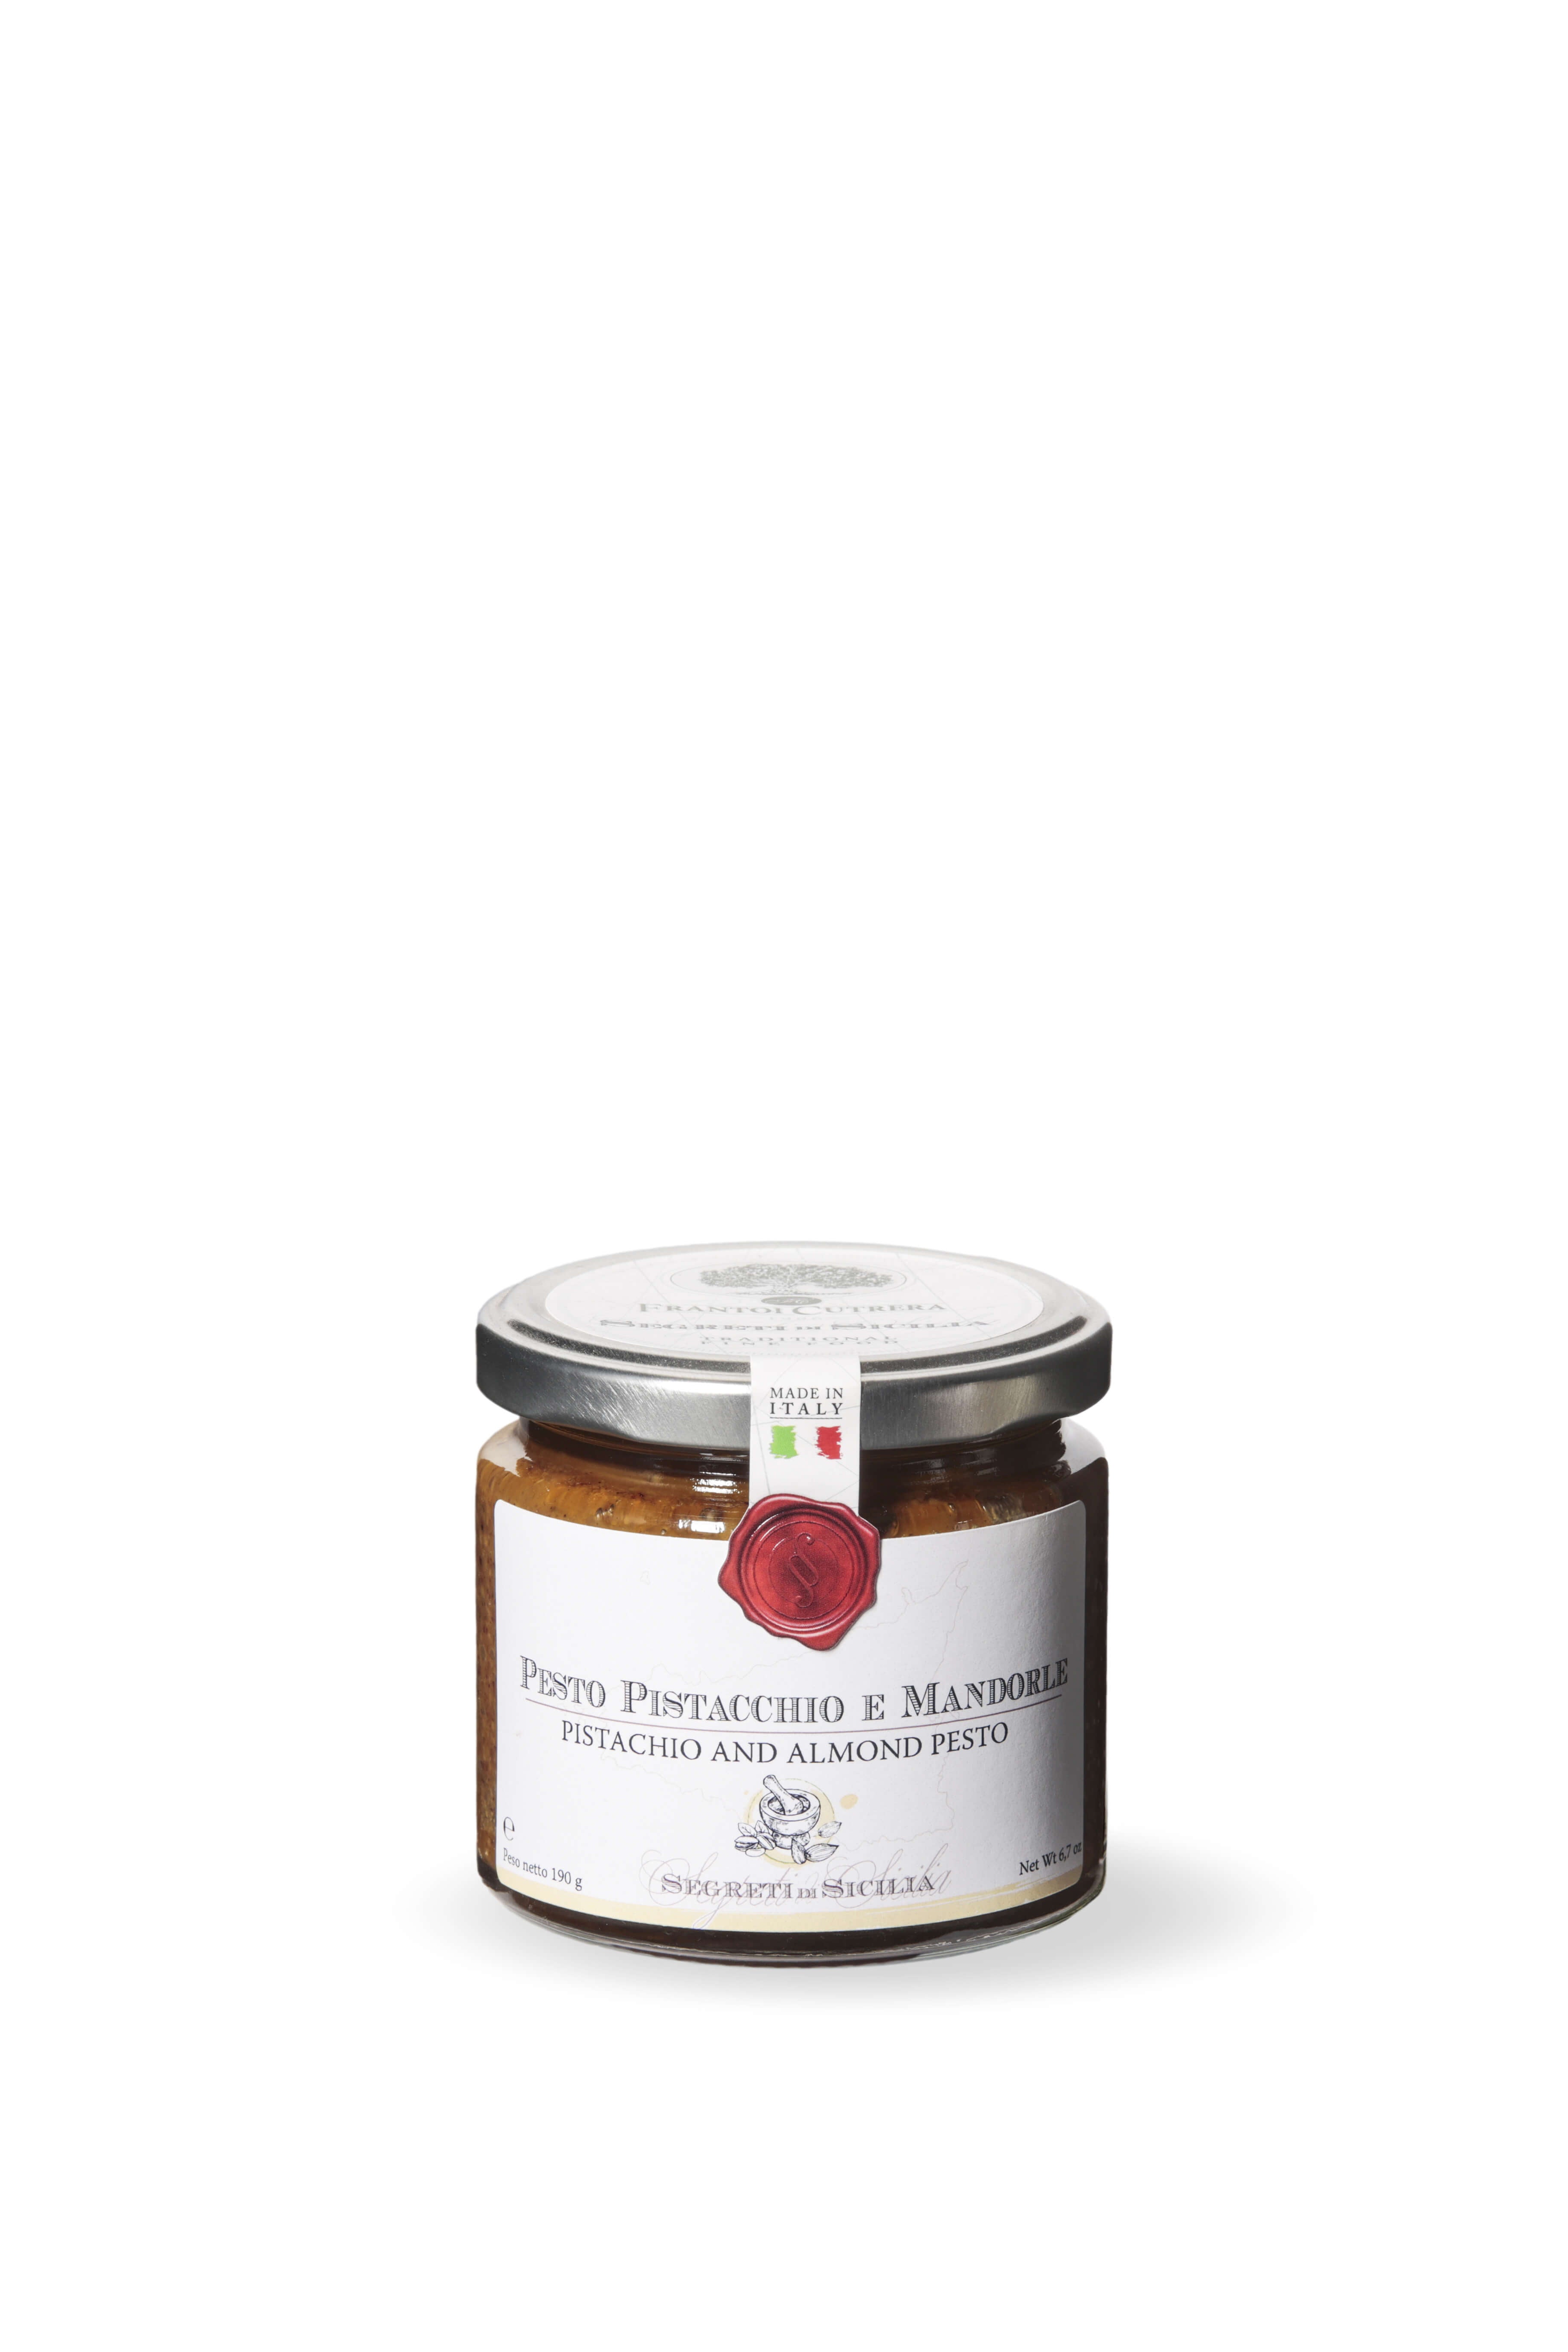 Pesto pistacchio e mandorle – Segreti di Sicilia